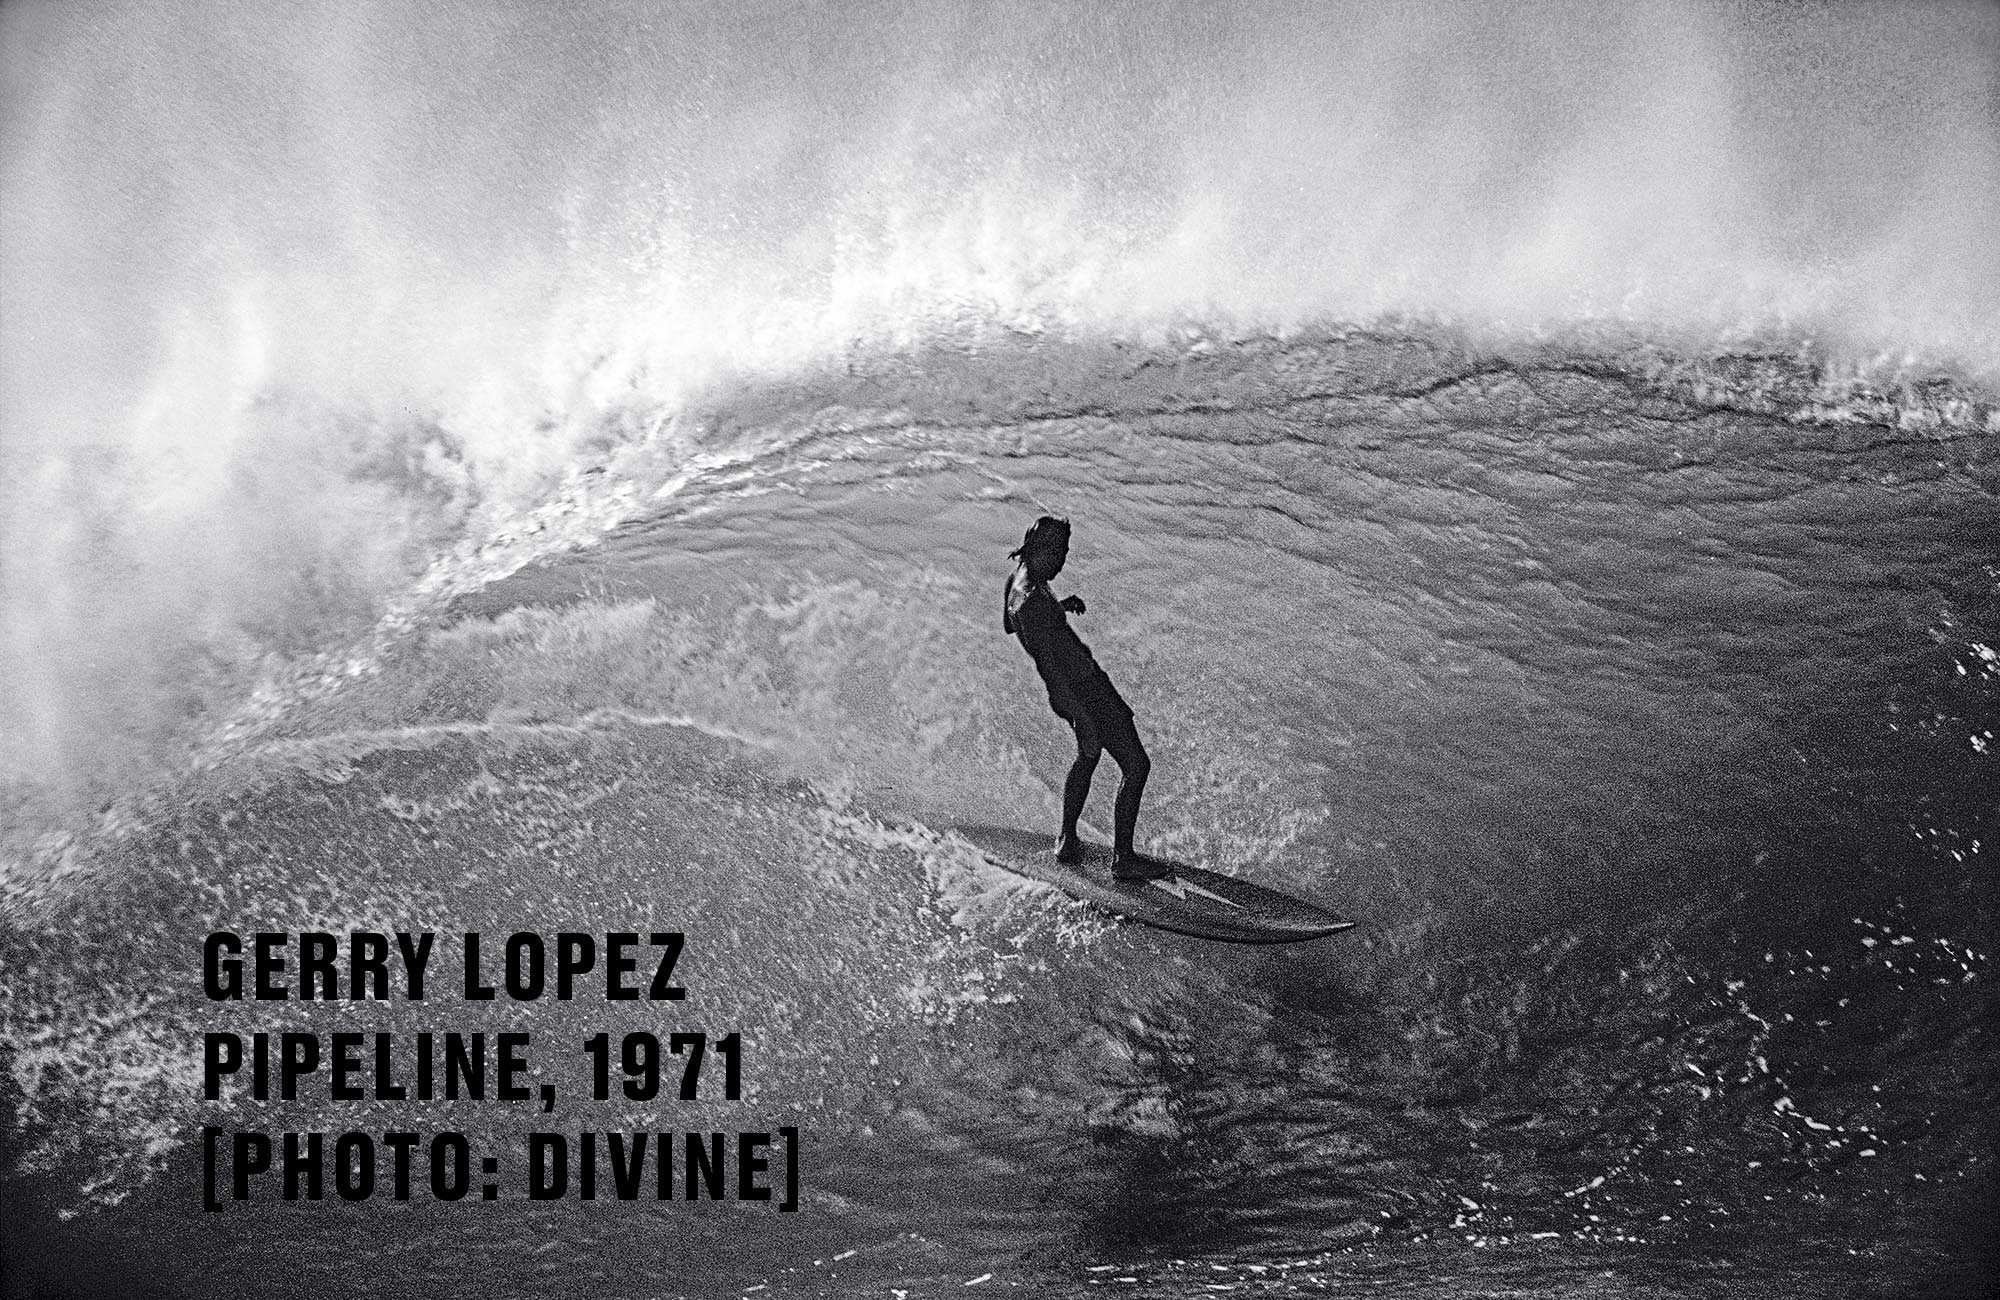 2000x1300 Gerry Lopez. "